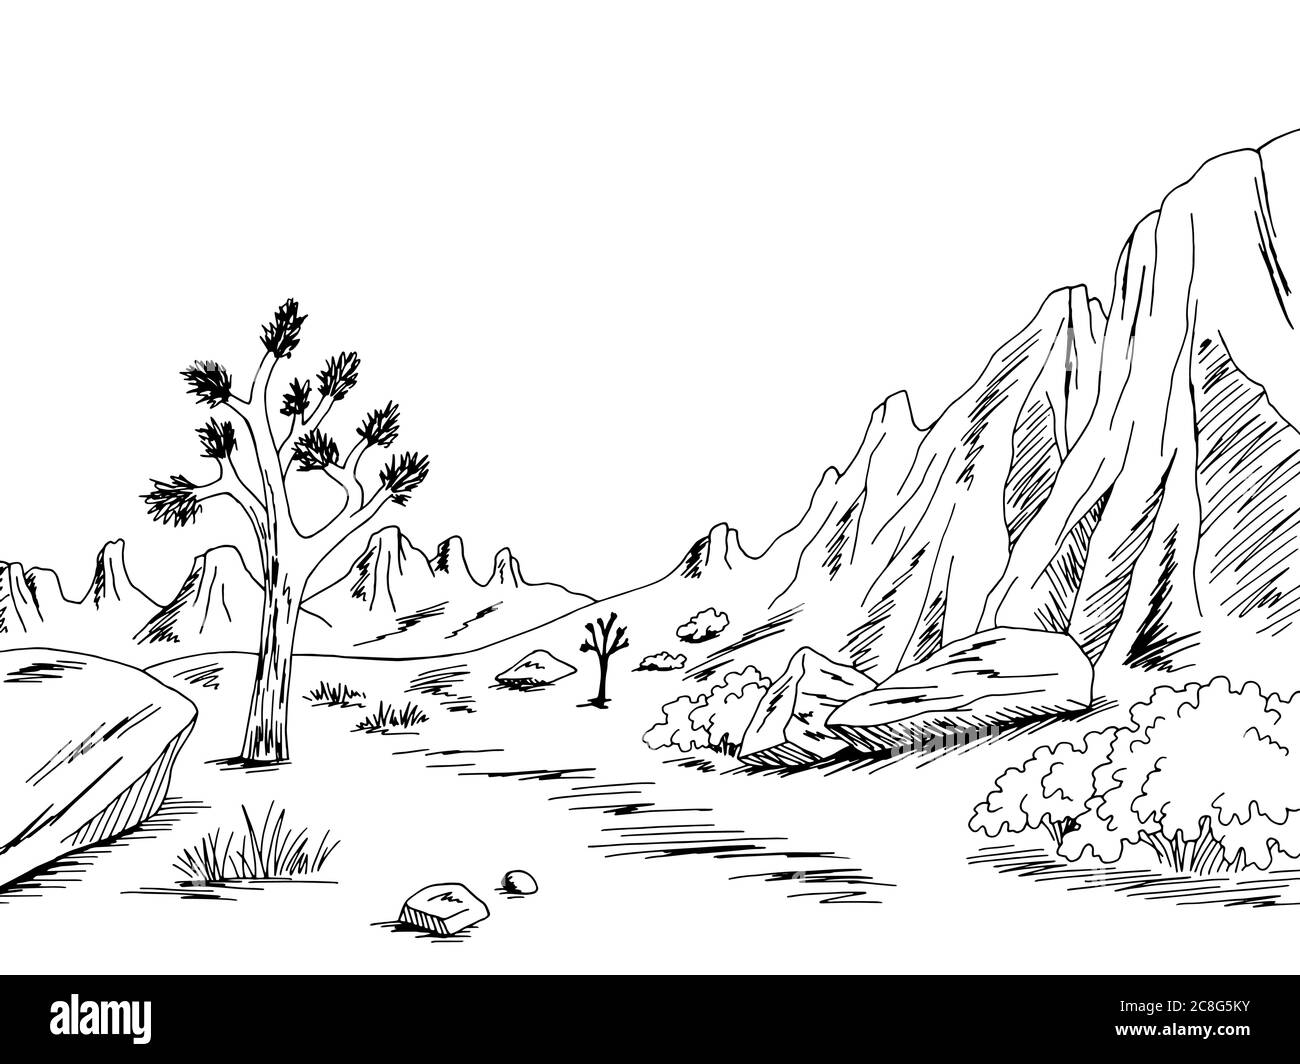 Desert graphic black white landscape sketch illustration vector Stock Vector